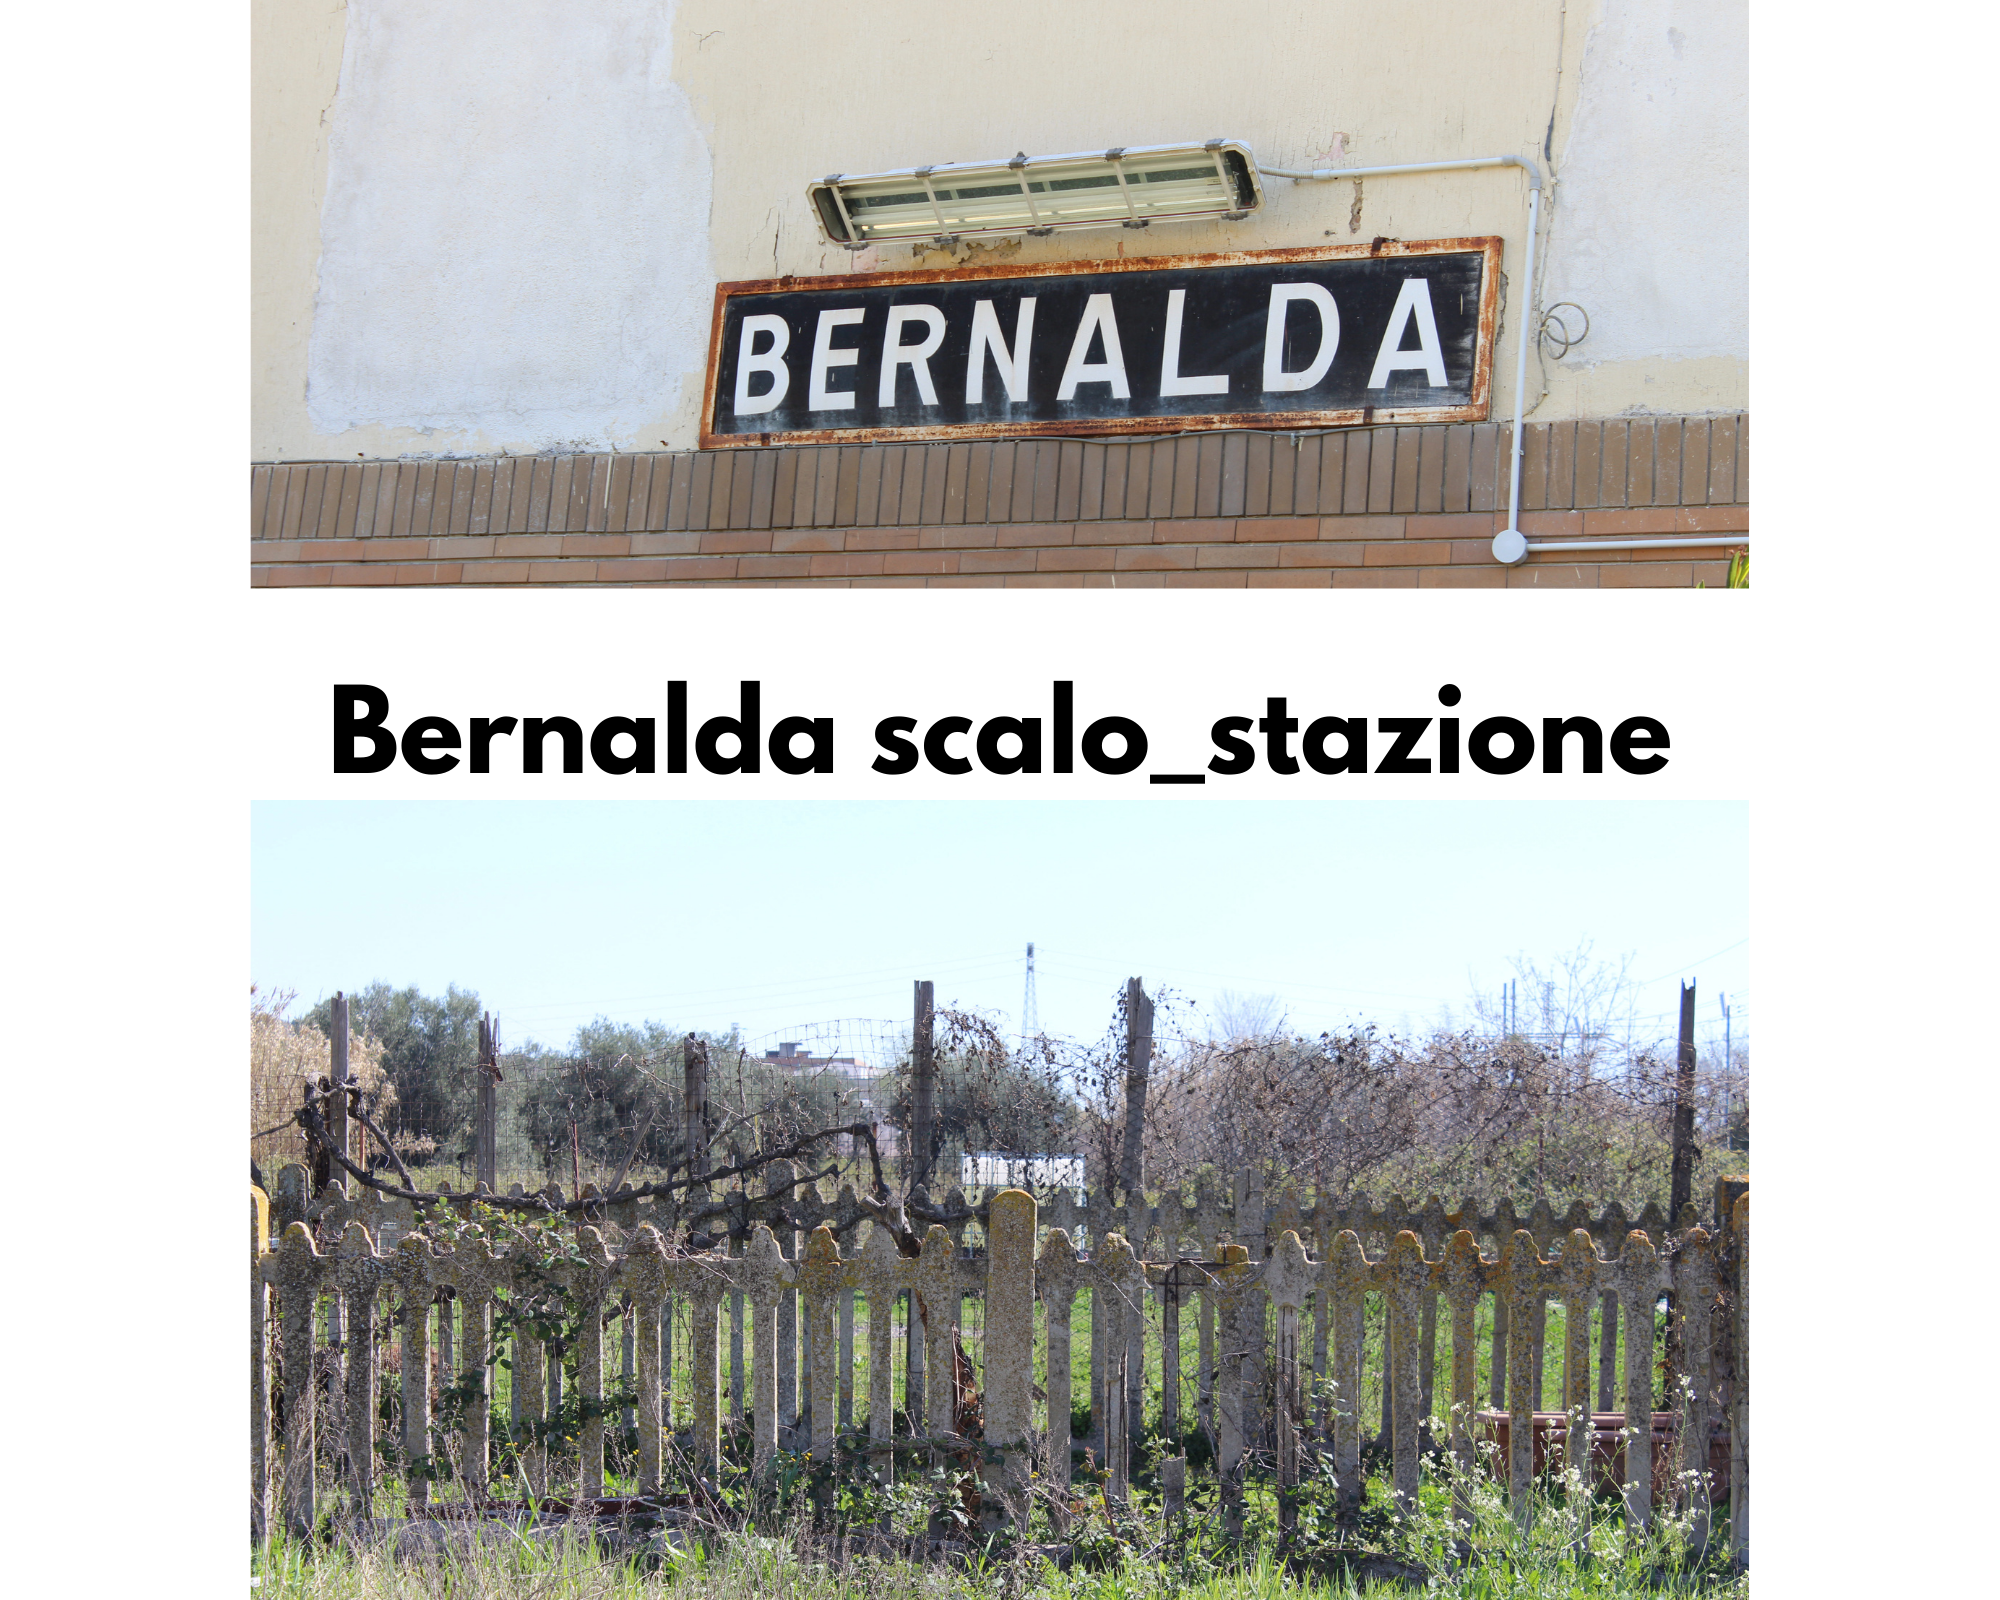 Bernalda scalo, stazione: cartello "Benalda"; recinzione di cemento